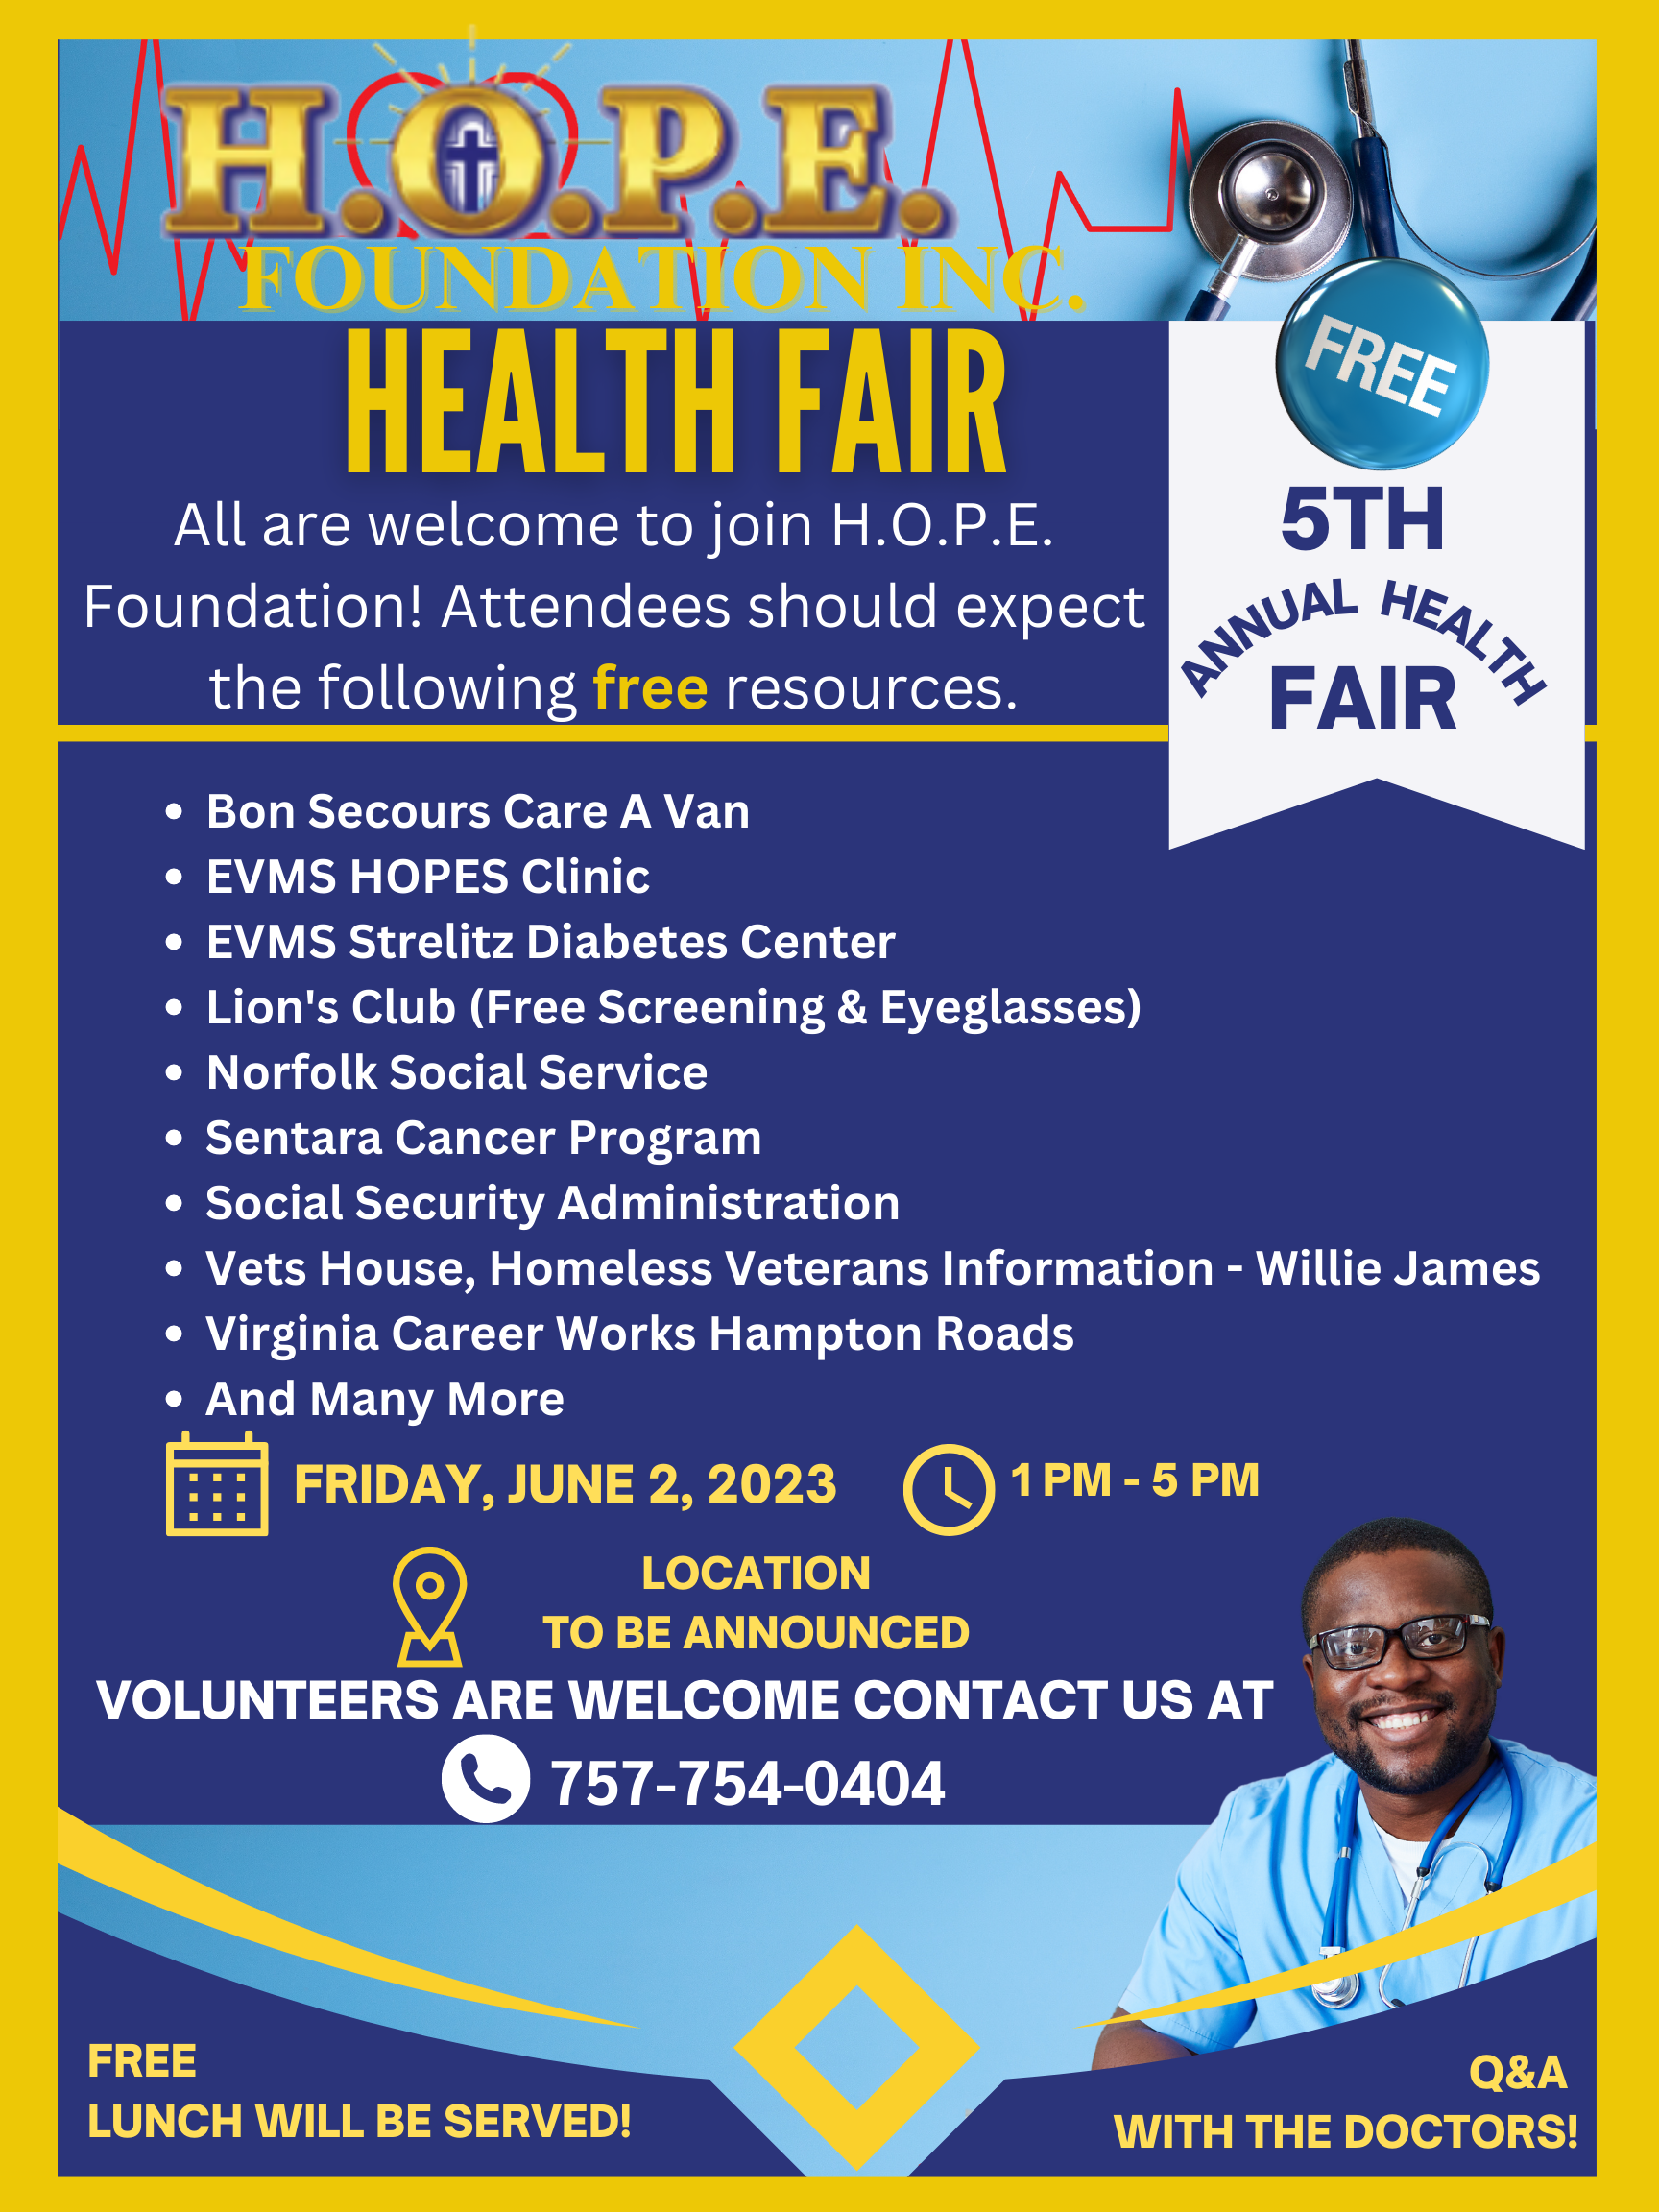 5th Annual Health Fair June 2, 2023 H.O.P.E Foundation, Inc.